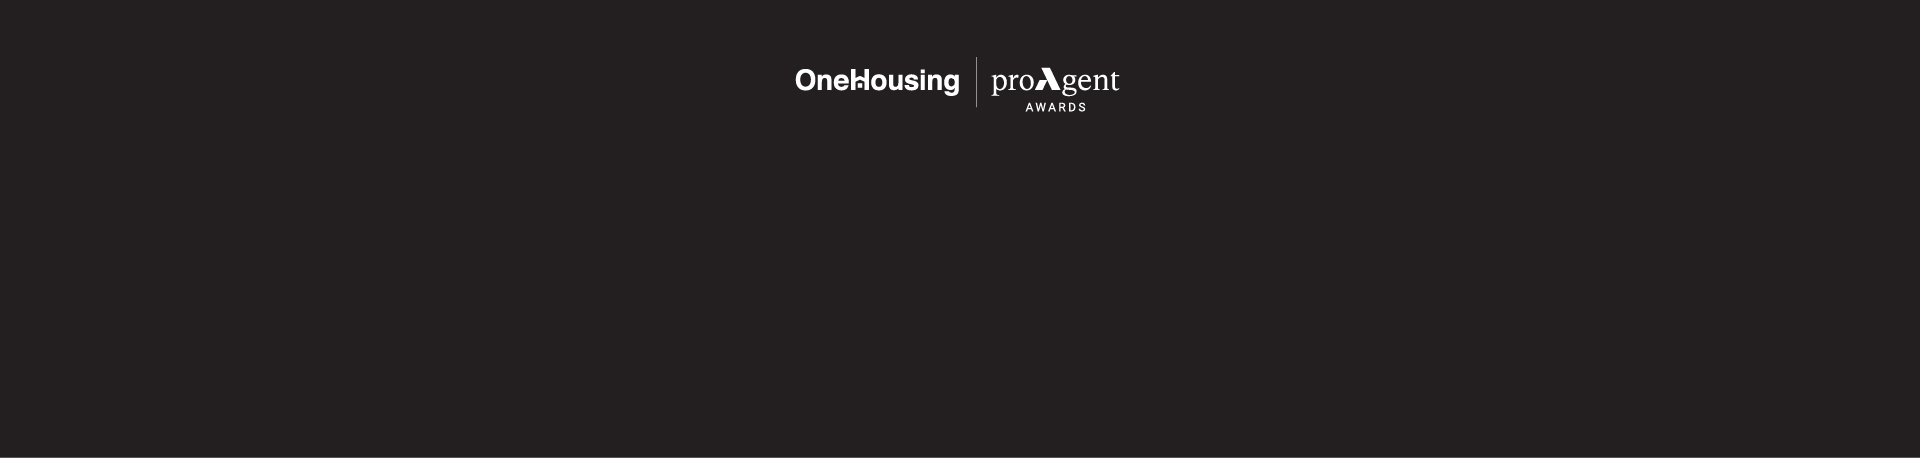 Ai xuất sắc nhất OneHousing Pro Agent Awards tháng 3/2022?